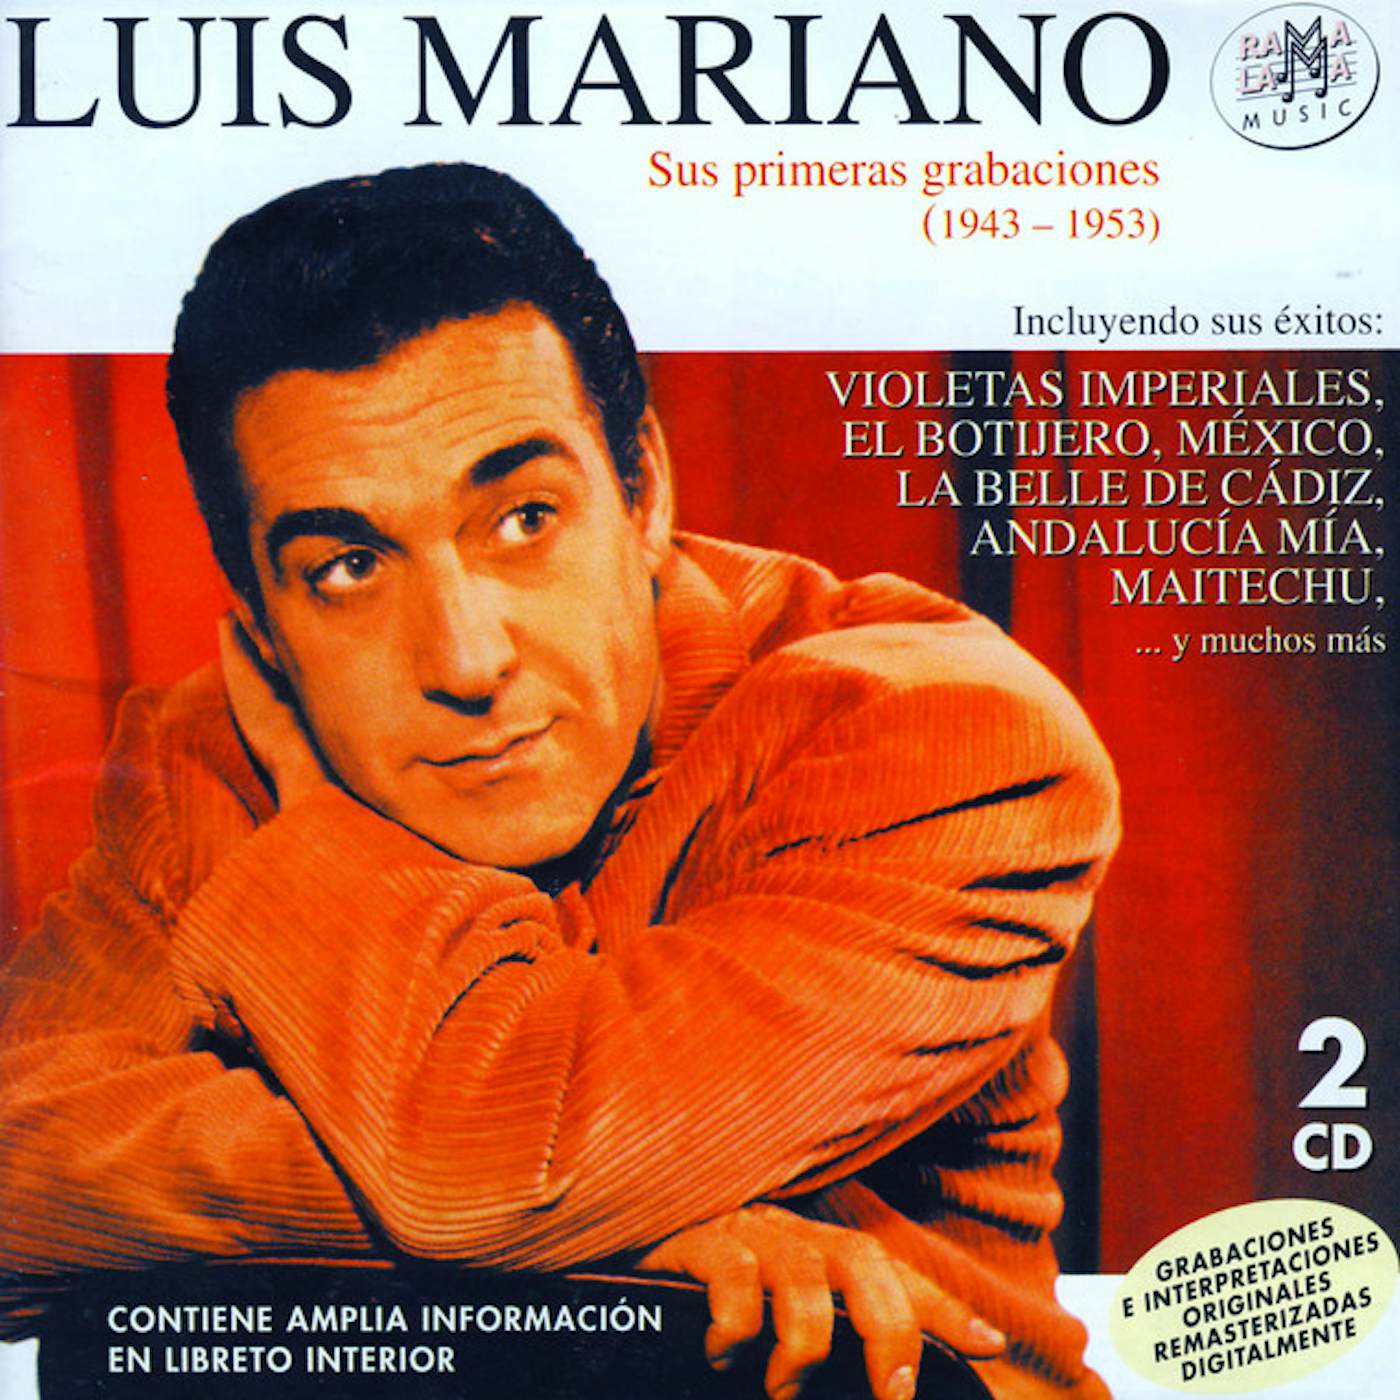 Luis Mariano SUS PRIMERAS GRABACIONES (1943-1953) CD